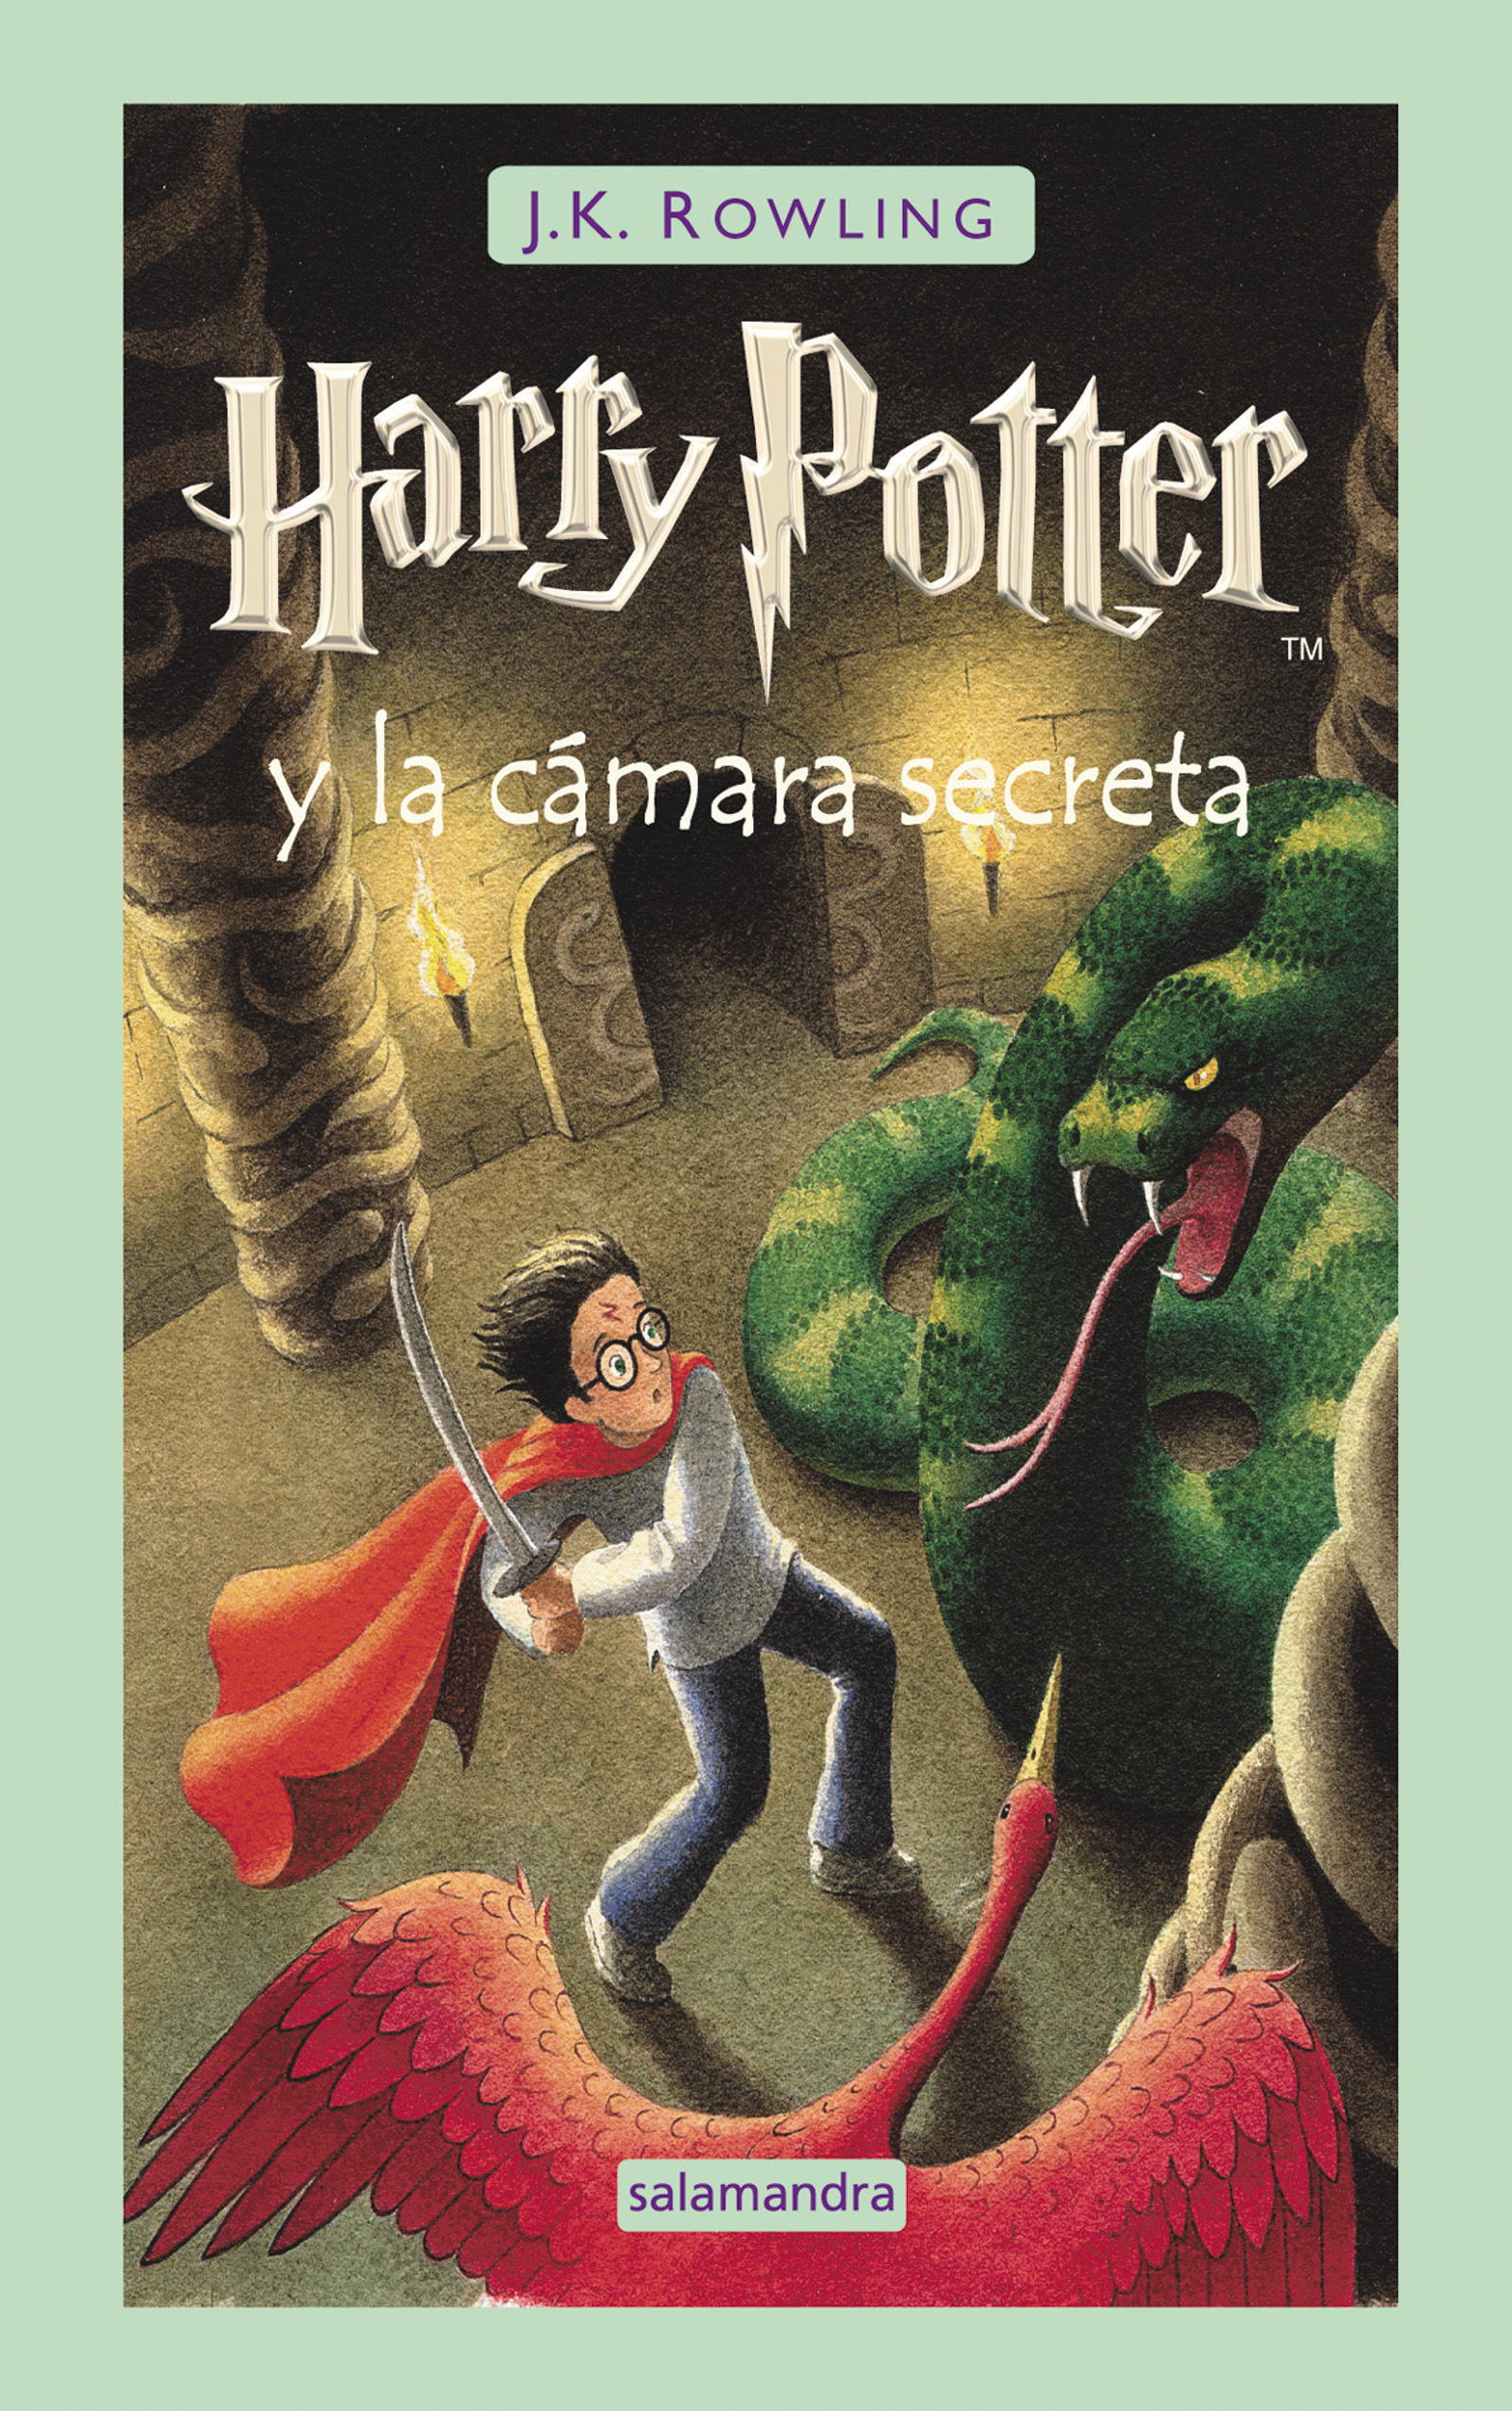 Harry Potter y la cámara secreta – J. K. Rowling